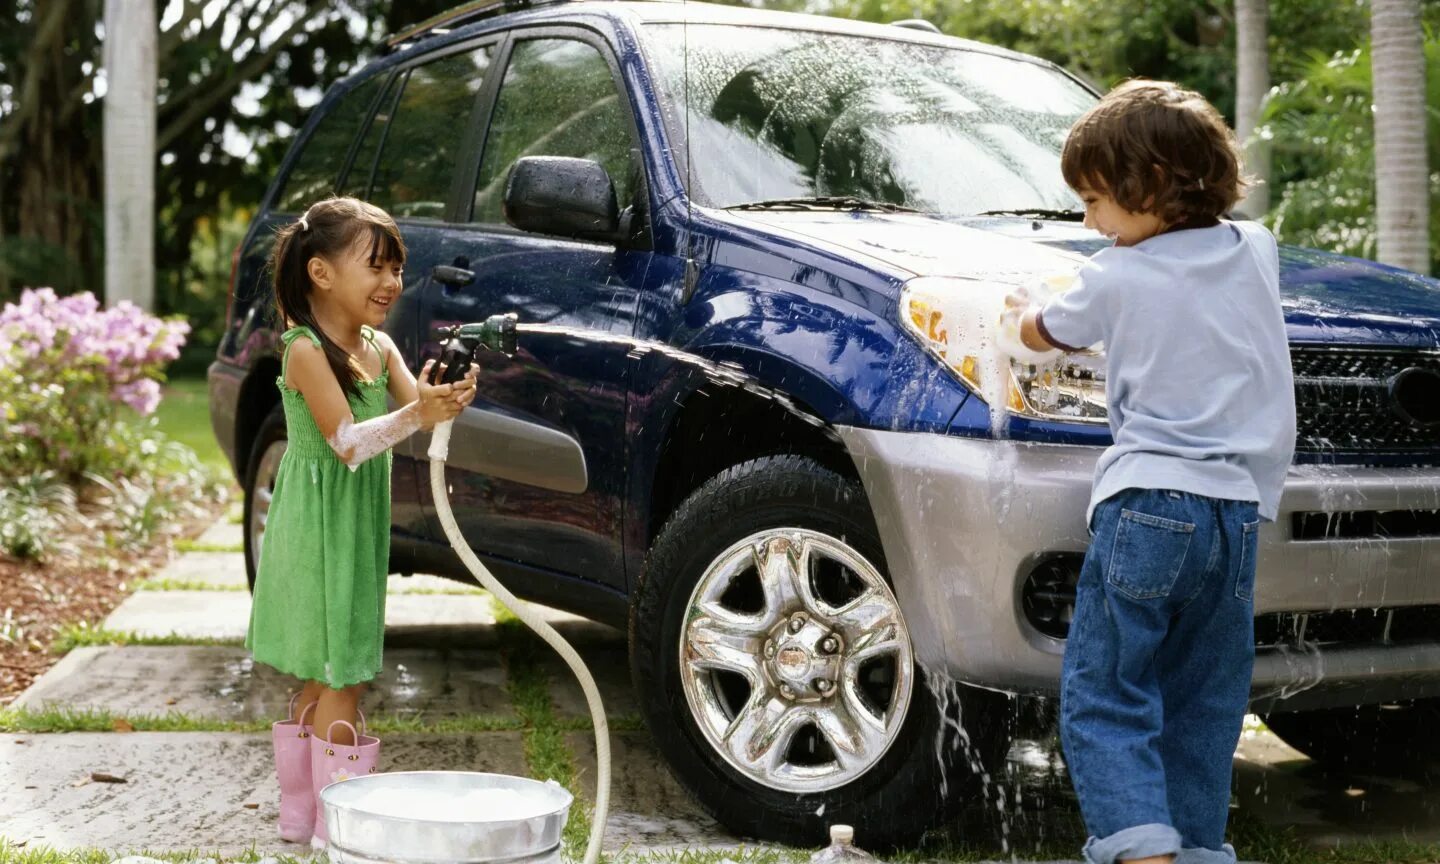 He clean the car. Мойка машины. Мойка машины на даче. Дети моют машину. Мойка машин детьми.